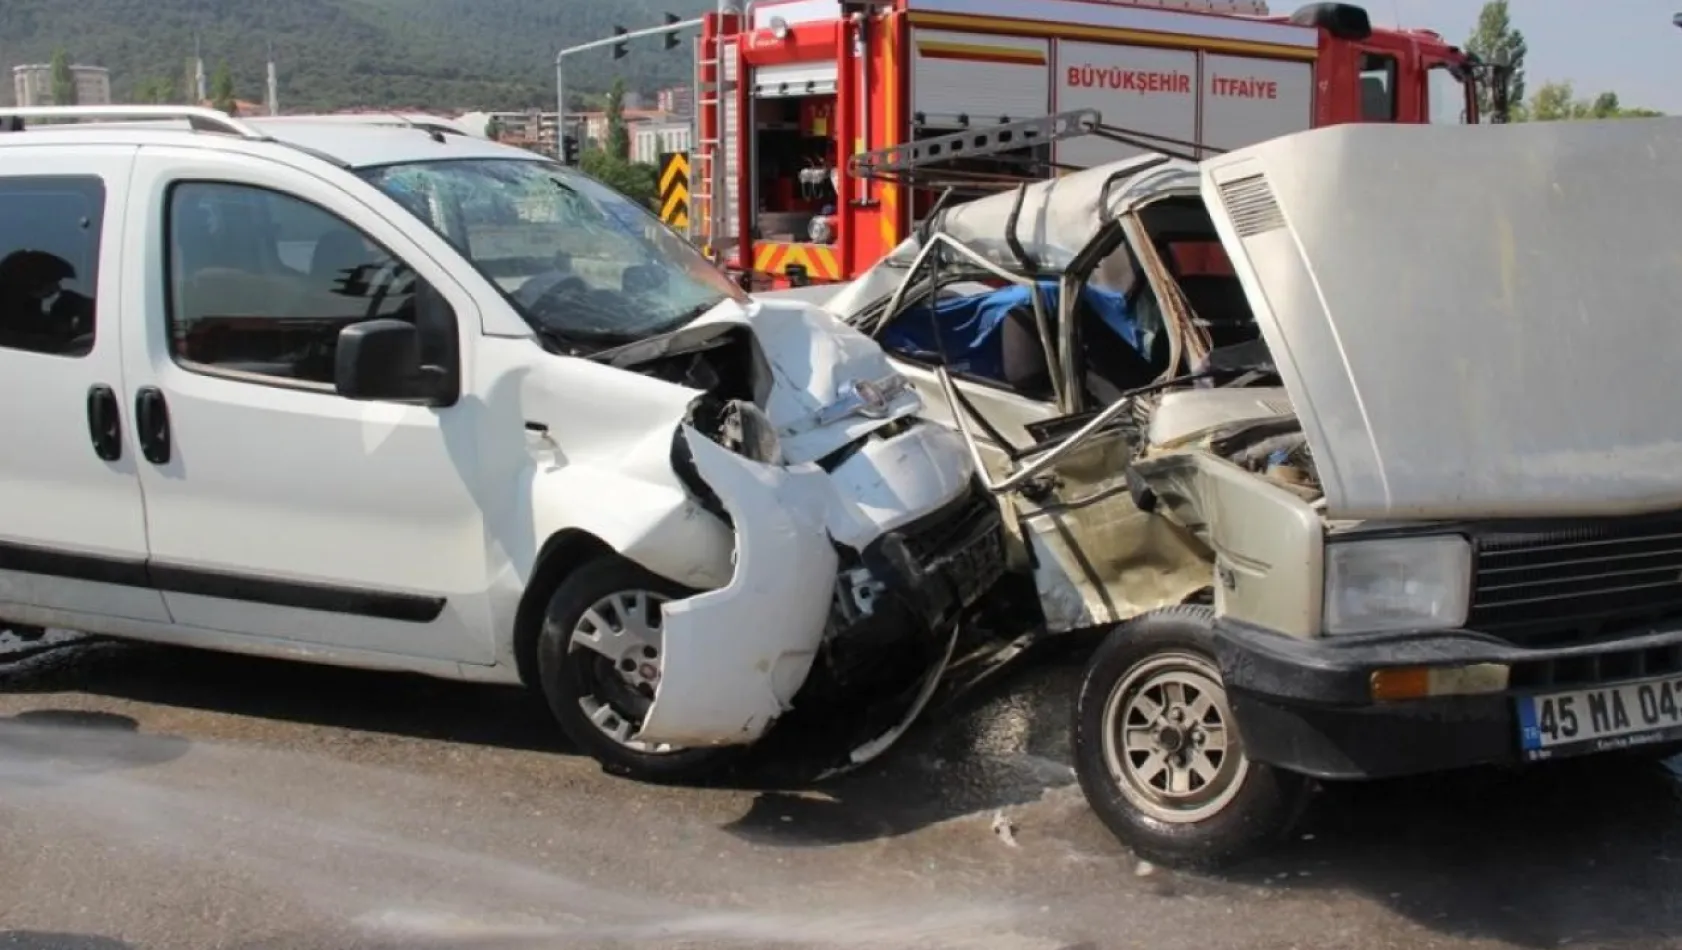 2023 yılında Manisa'daki trafik kazalarında 146 kişi hayatını kaybetti